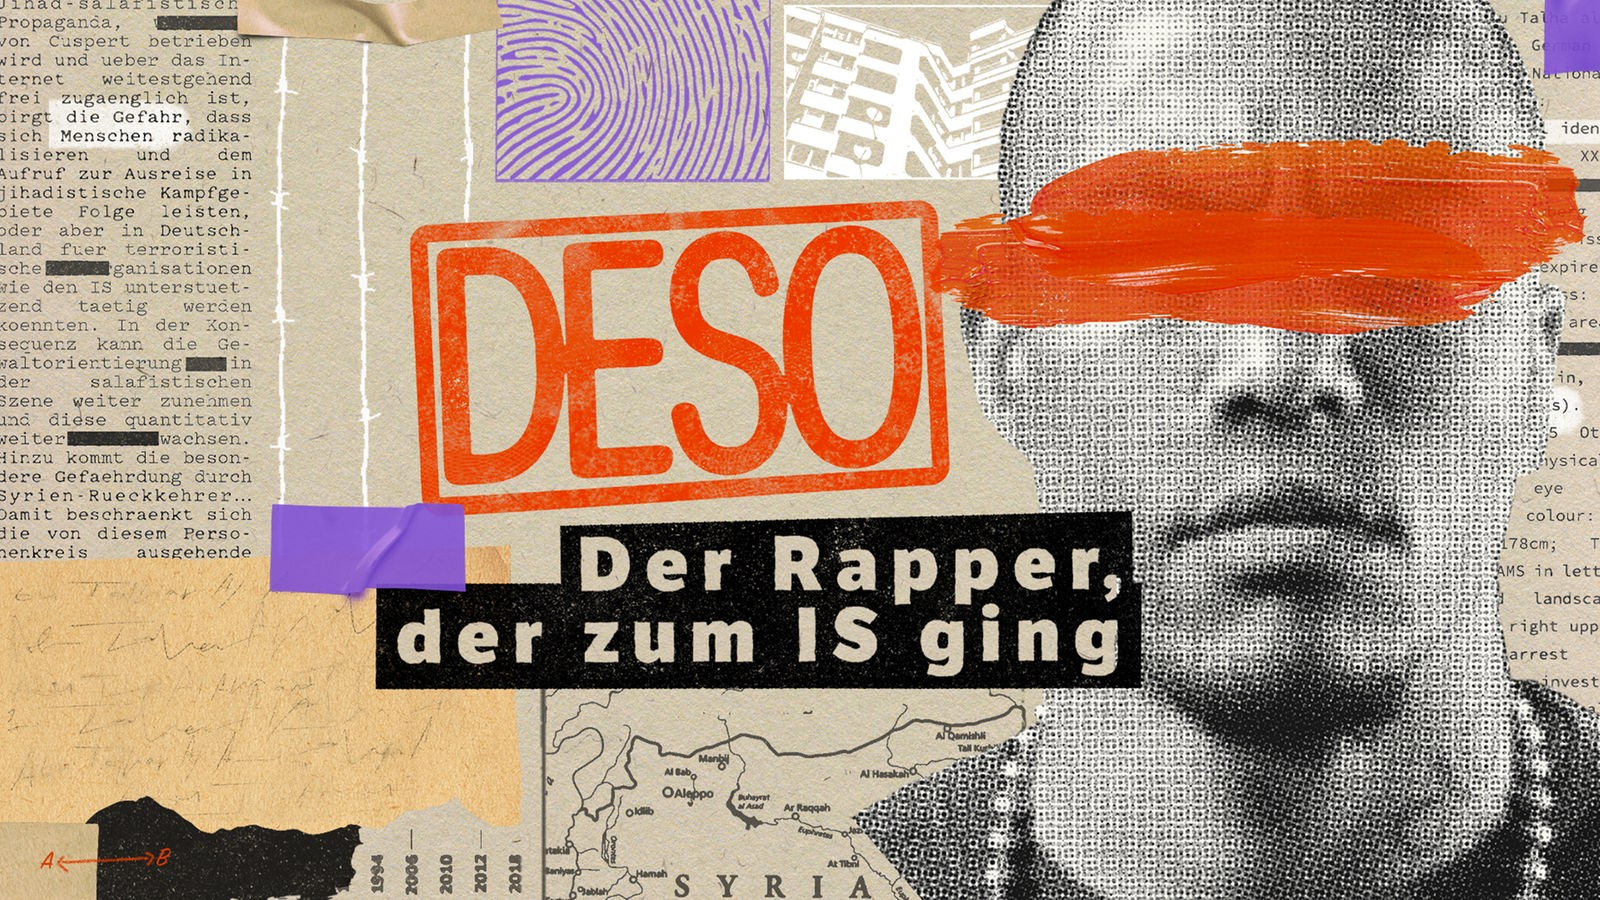 Gesicht des ehemaligen Rappers Denis Cuspert alias Deso Dogg mit einem orangenen Balken vor den Augen, daneben der Text "DESO - der Rapper, der zum IS ging"